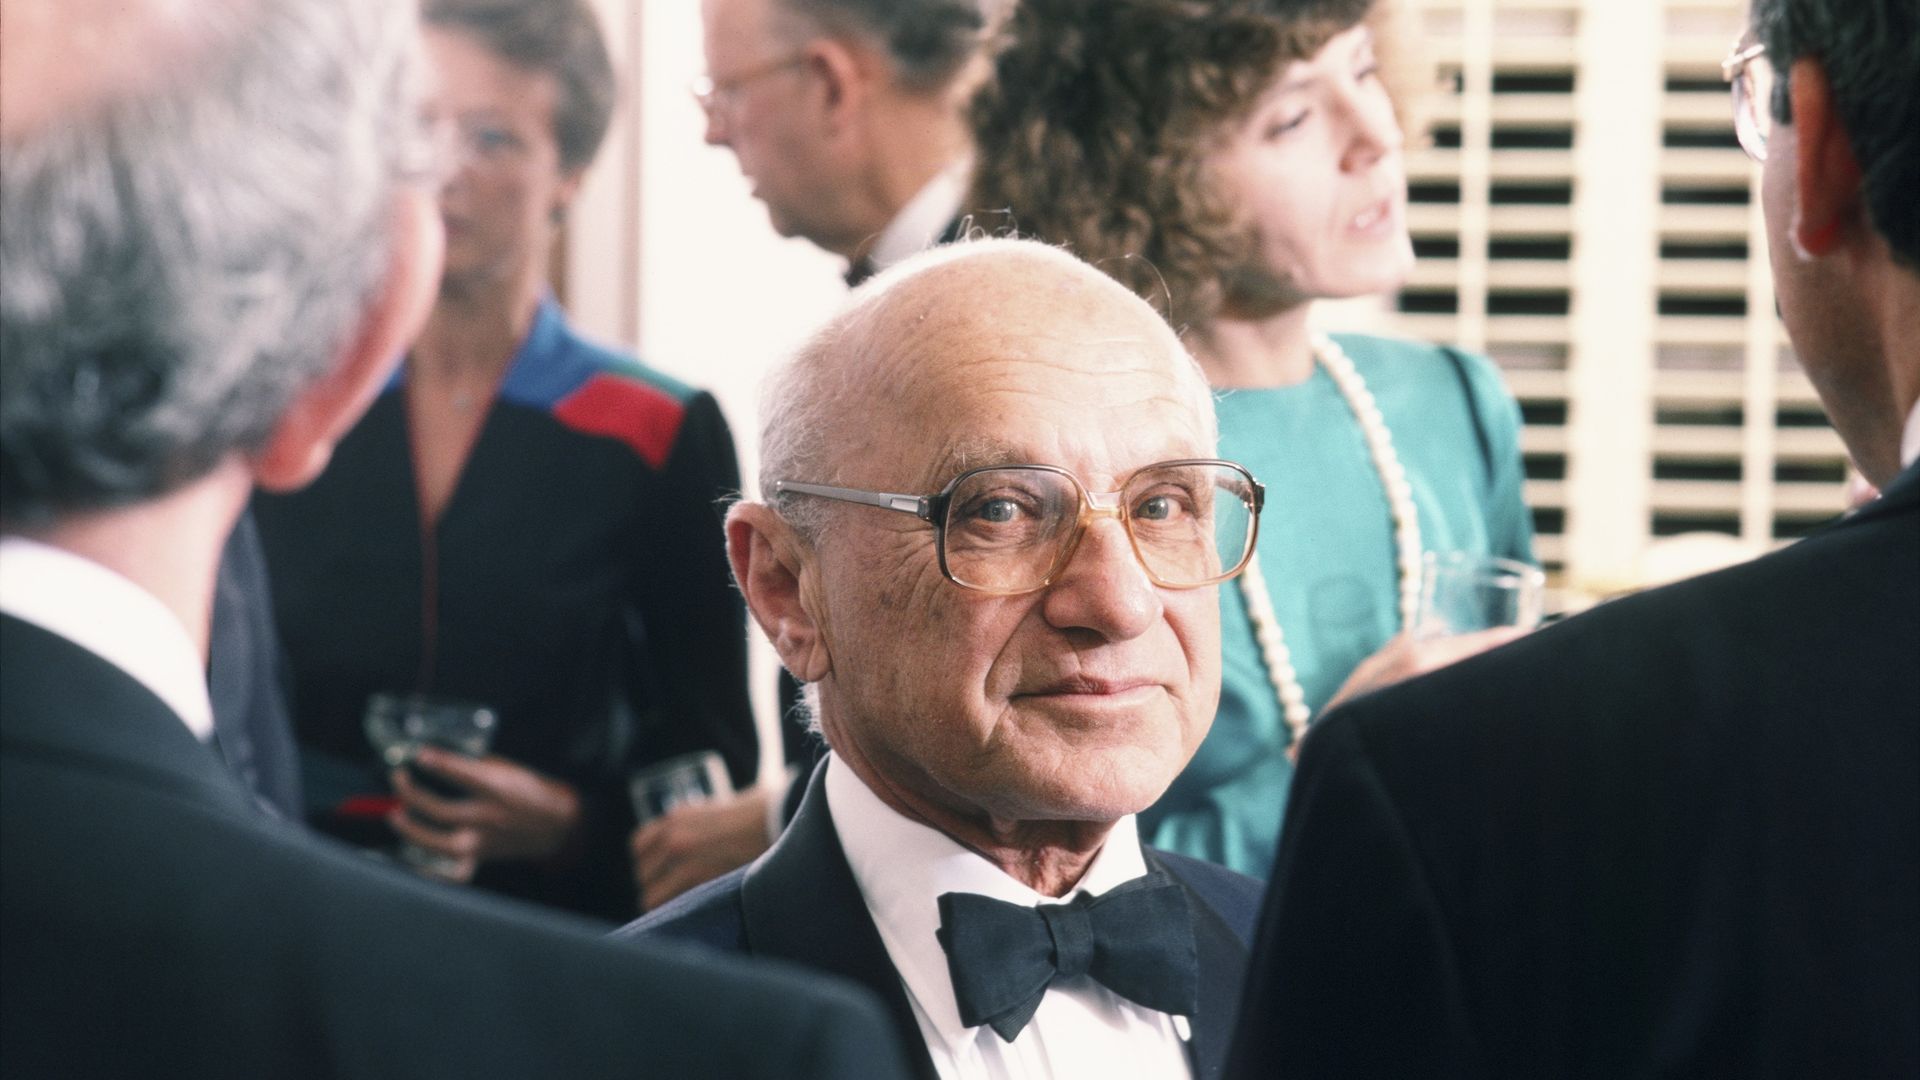 Milton Friedman in black tie